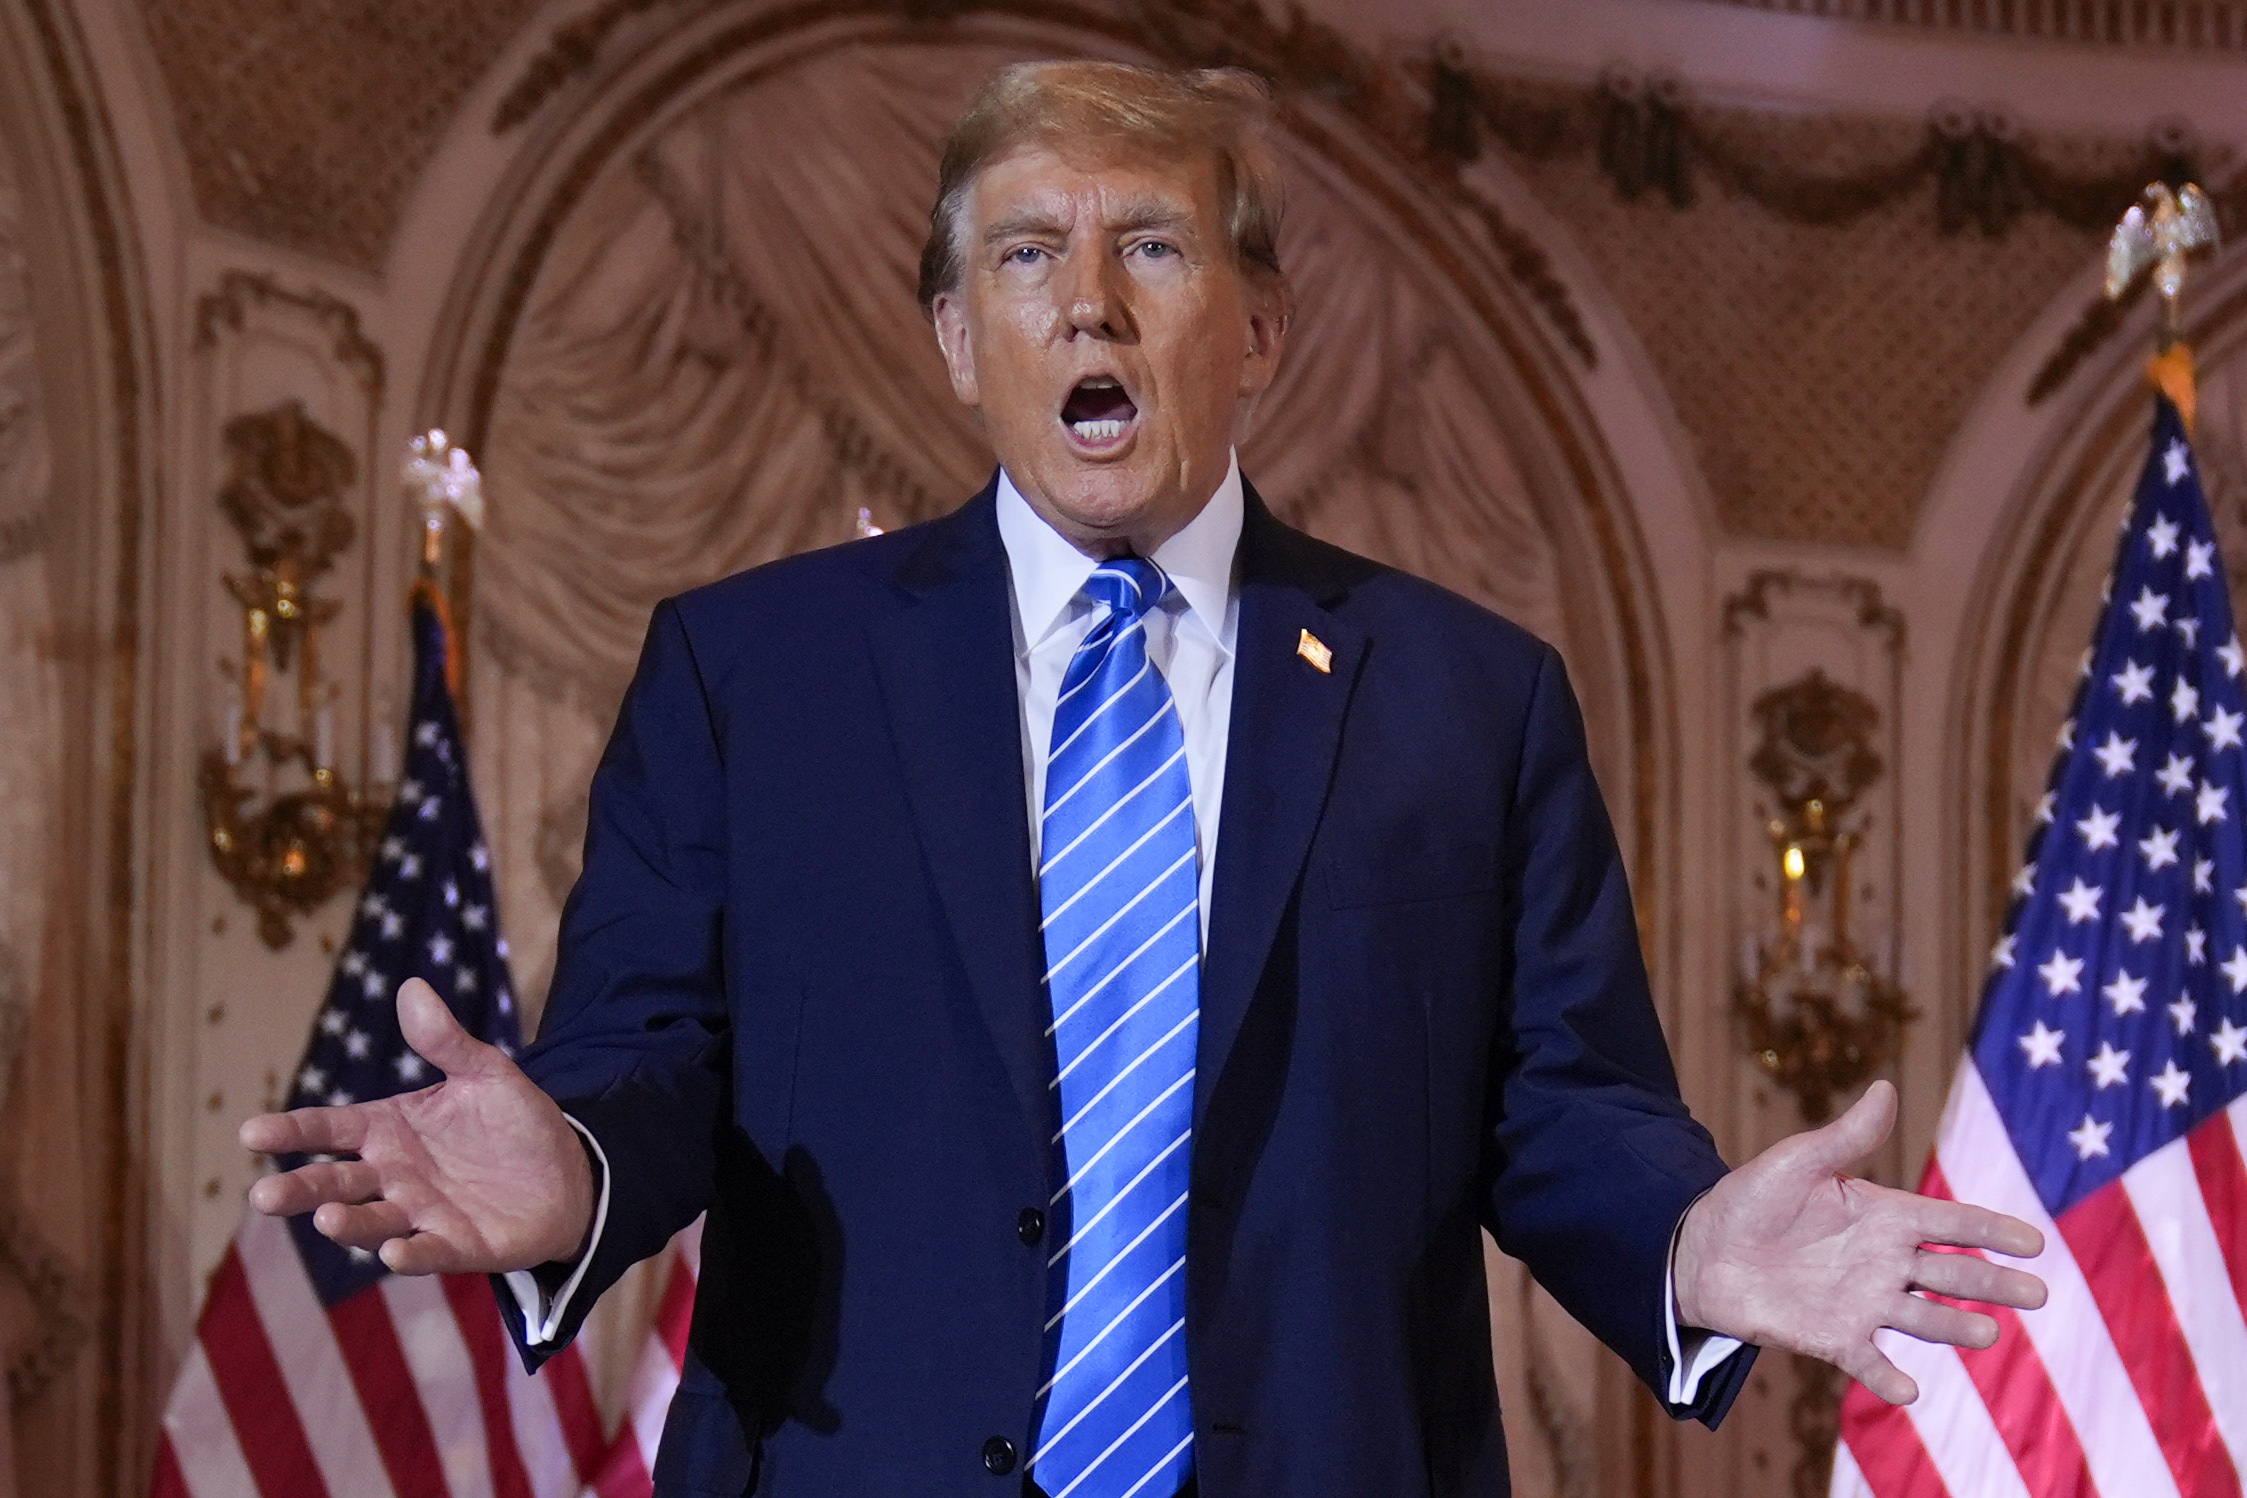 Donald Trump speaking at Mar-a-Lago